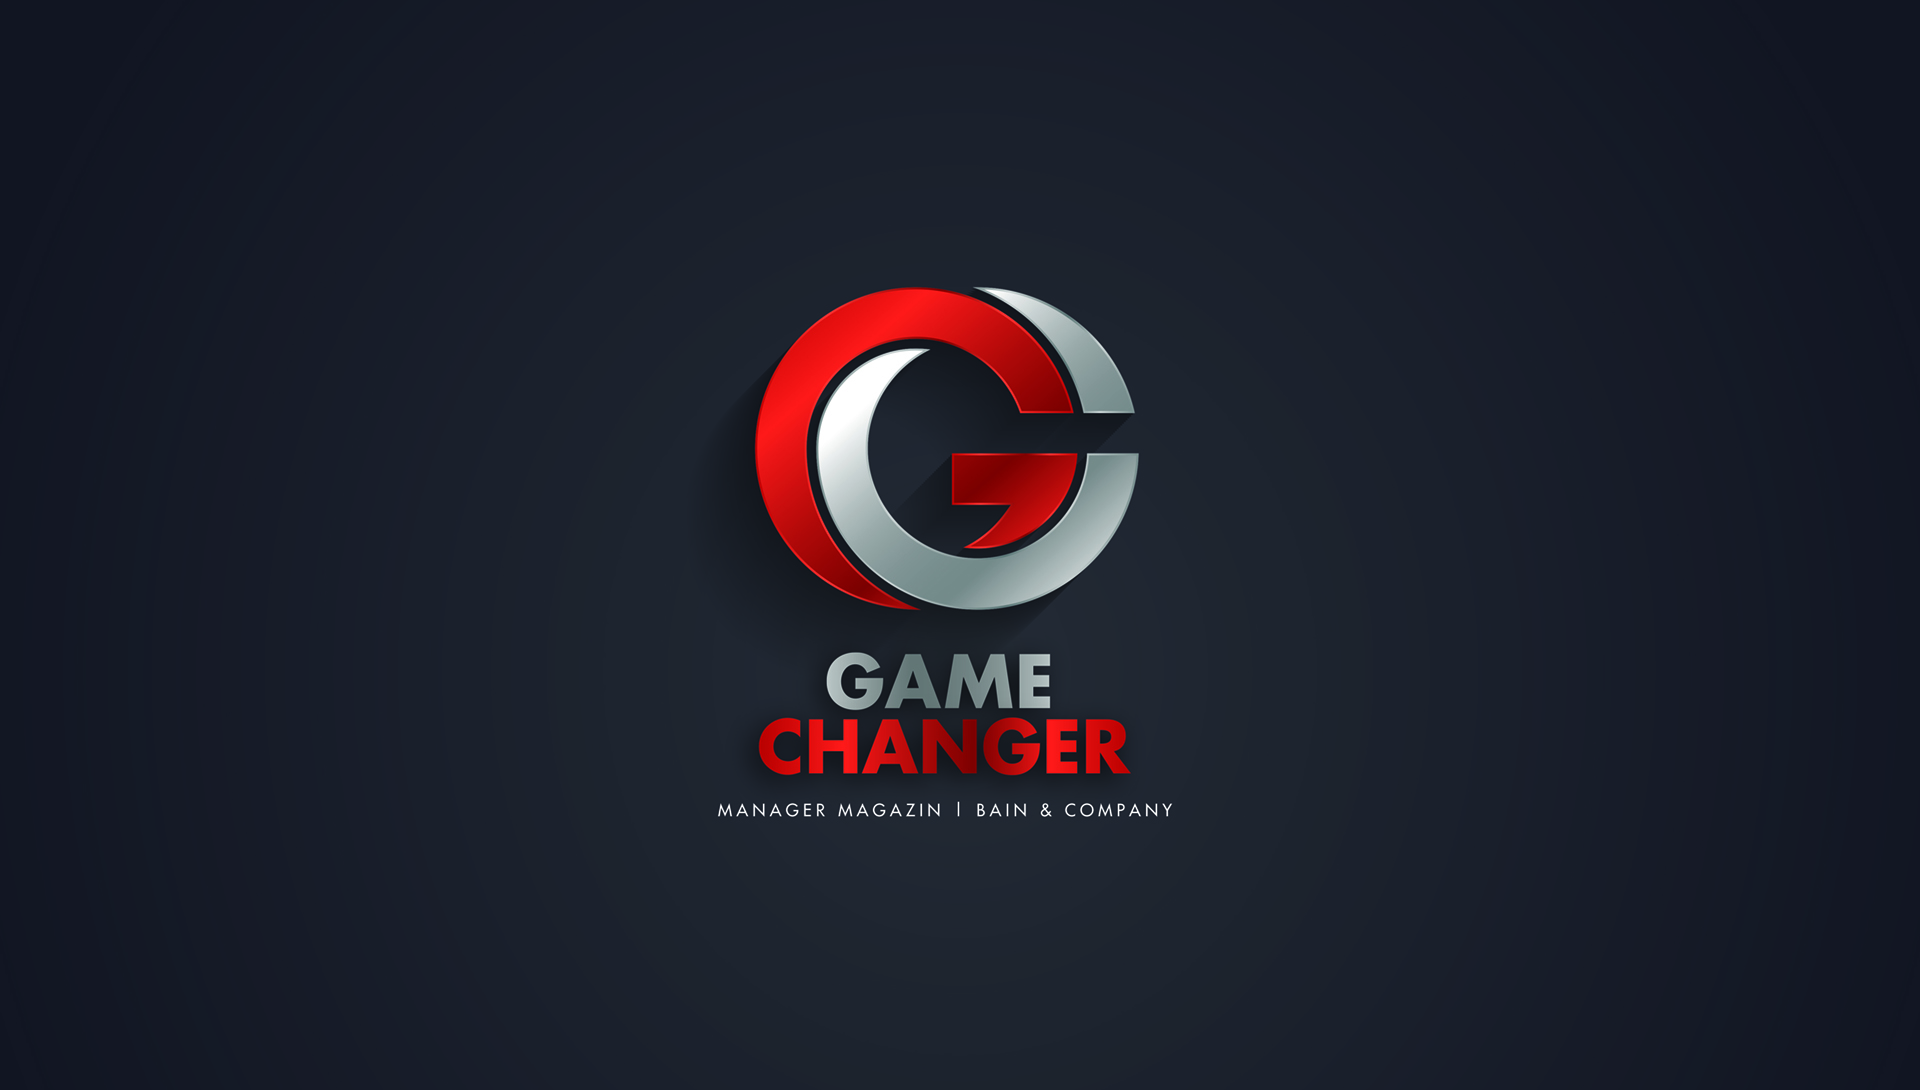 Game Changer Award 2021 Logo 1920x1080